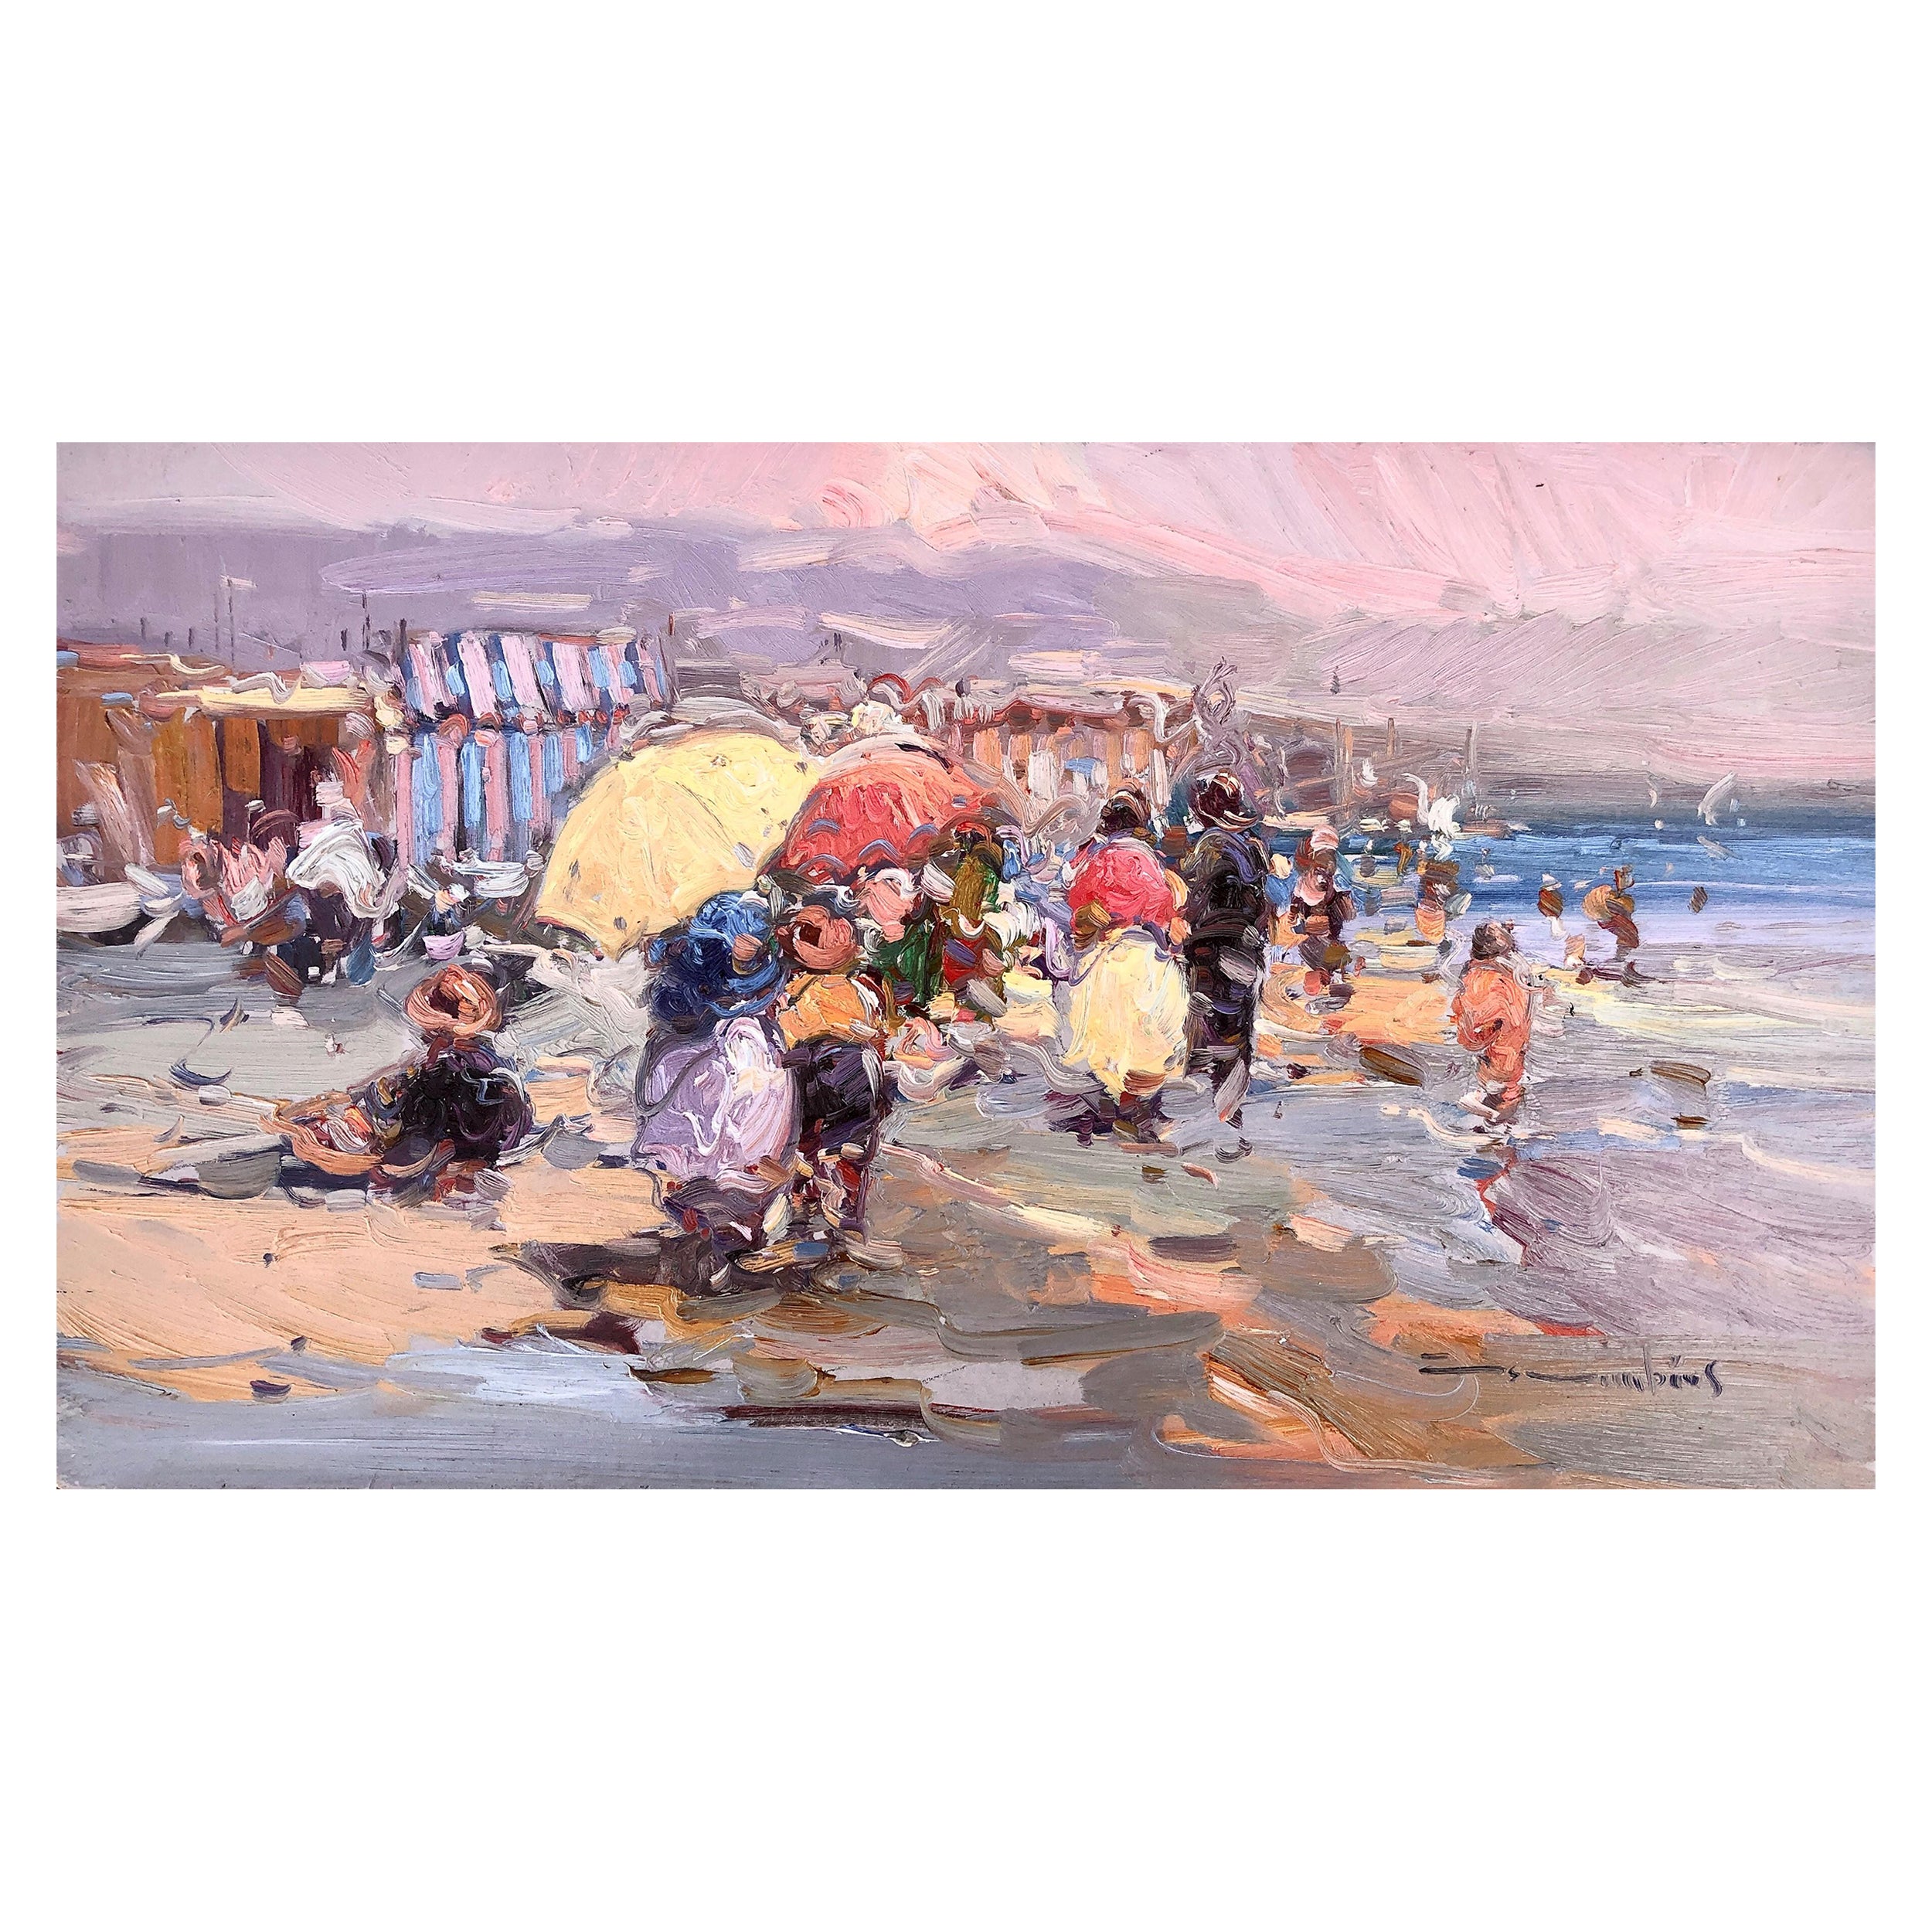 Peinture à l'huile sur toile « Beach's day » (jour de plage)